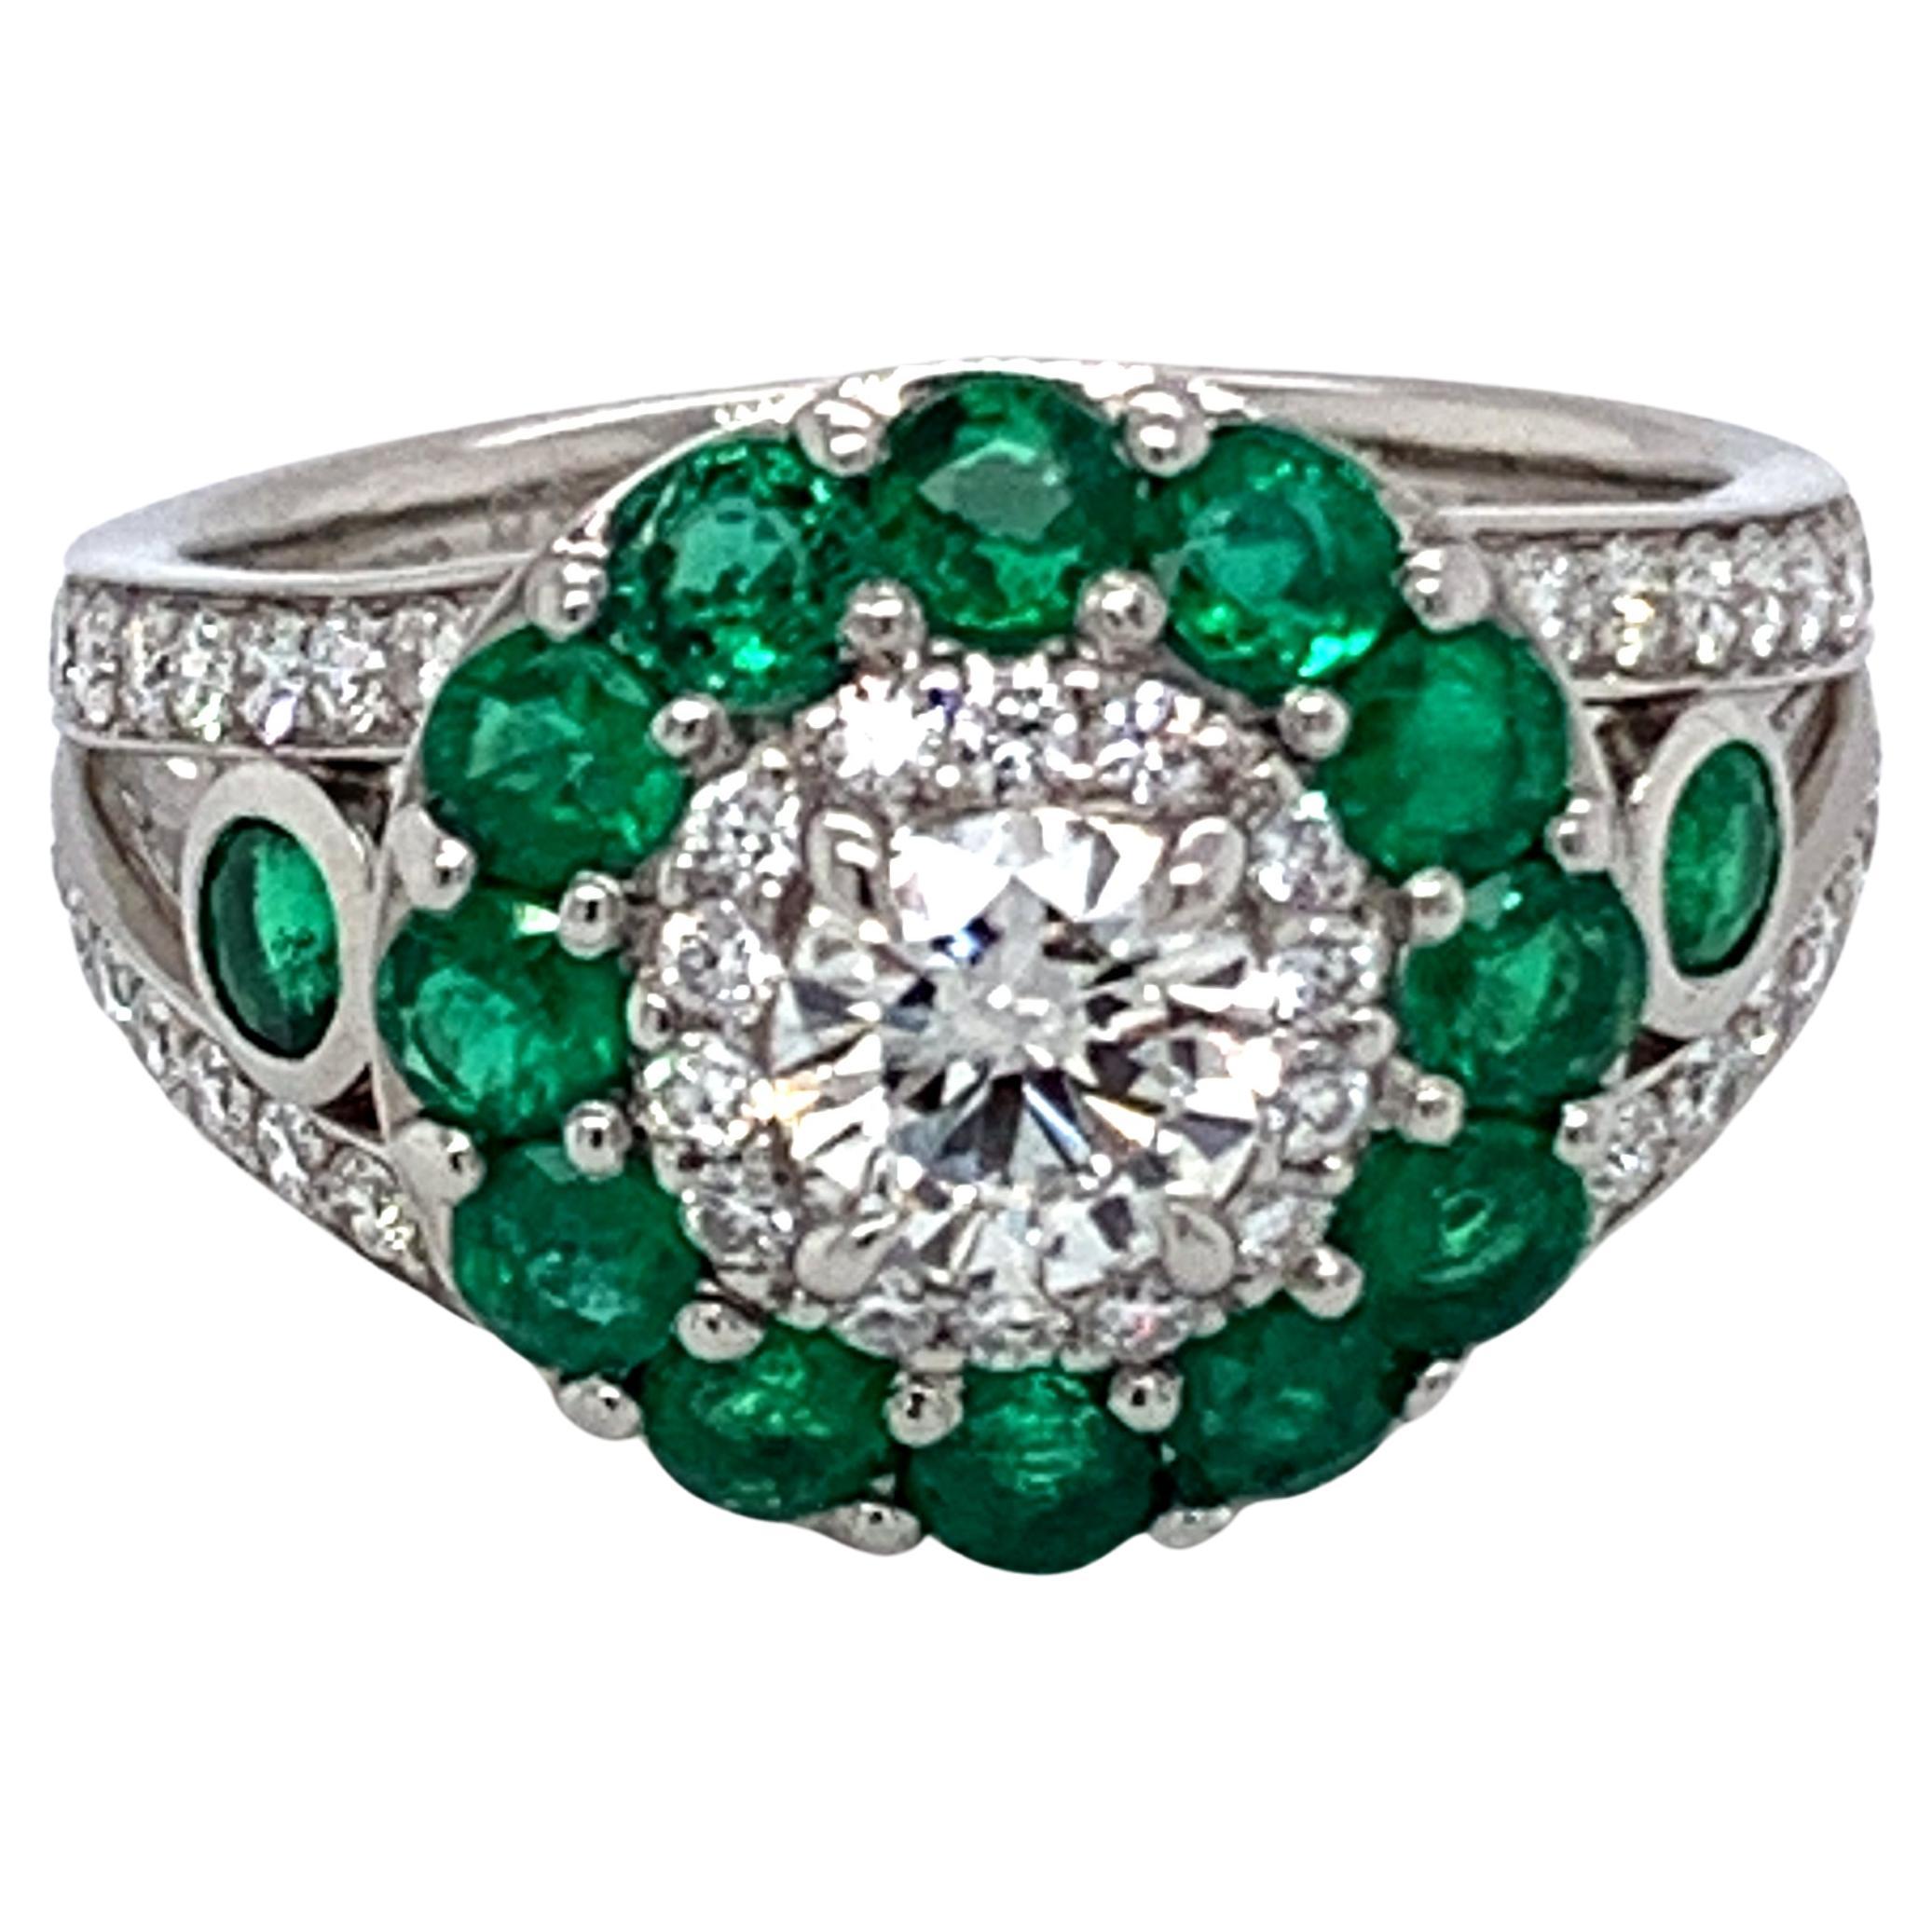 Danuta einzigartiger Verlobungsring aus Platin mit Diamant und Smaragd